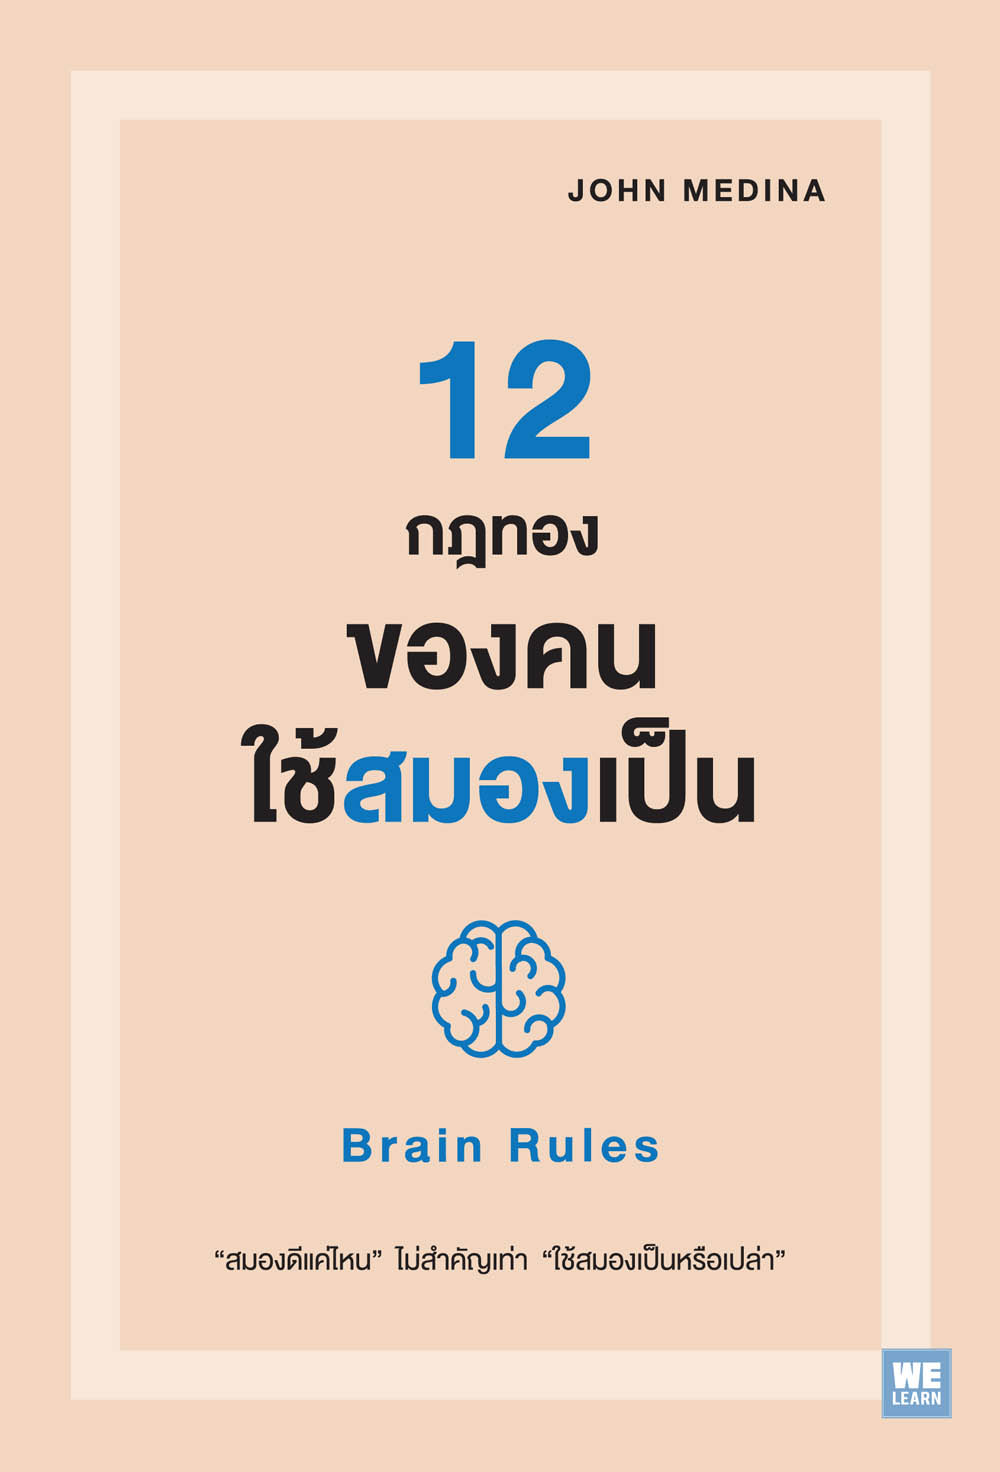 12 กฎทองของคนใช้สมองเป็น     (Brain Rules)